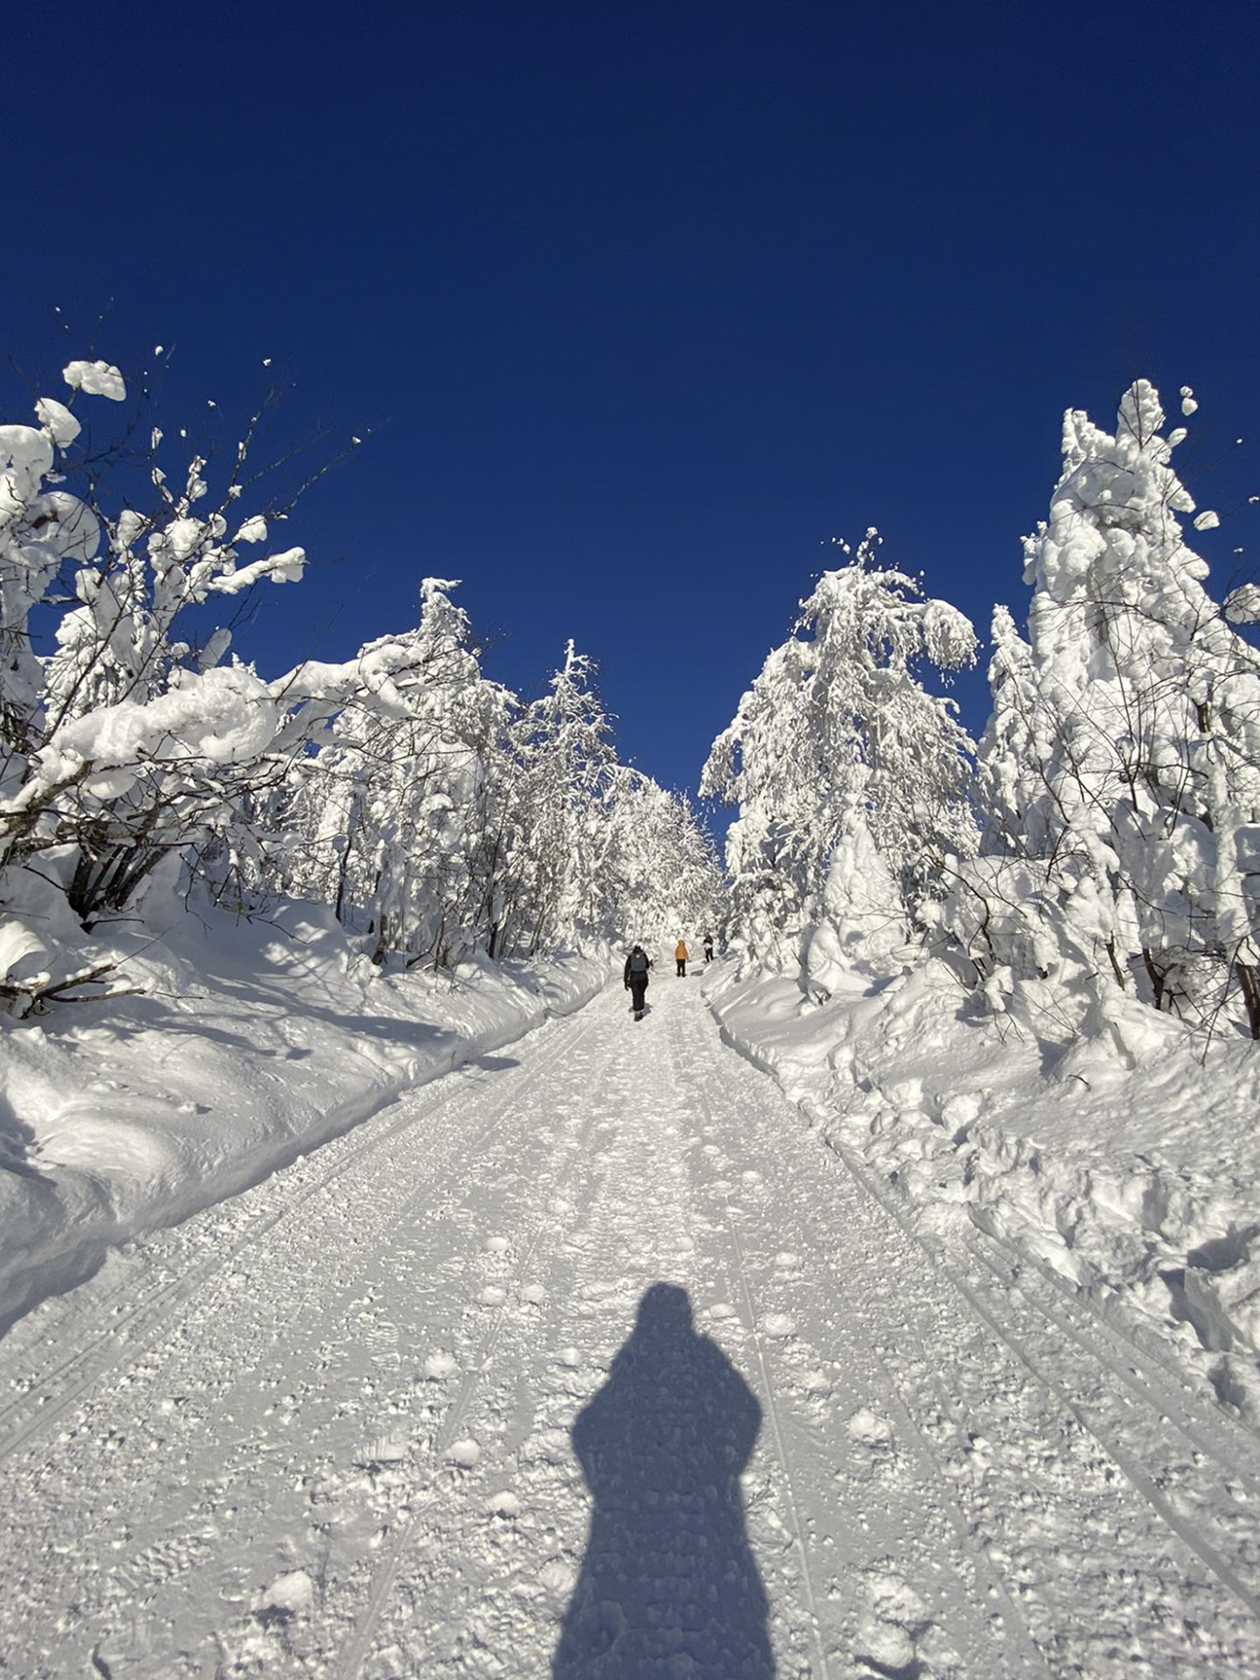 Подняться на Полюд можно на снегоходе, но в нашей отважной группе все решили идти пешком. Пока шли наверх, глаза потихоньку привыкали к контрастности глубокого неба и кипенно-белого снега. Фотографировать хотелось каждое дерево, каждый новый поворот дороги